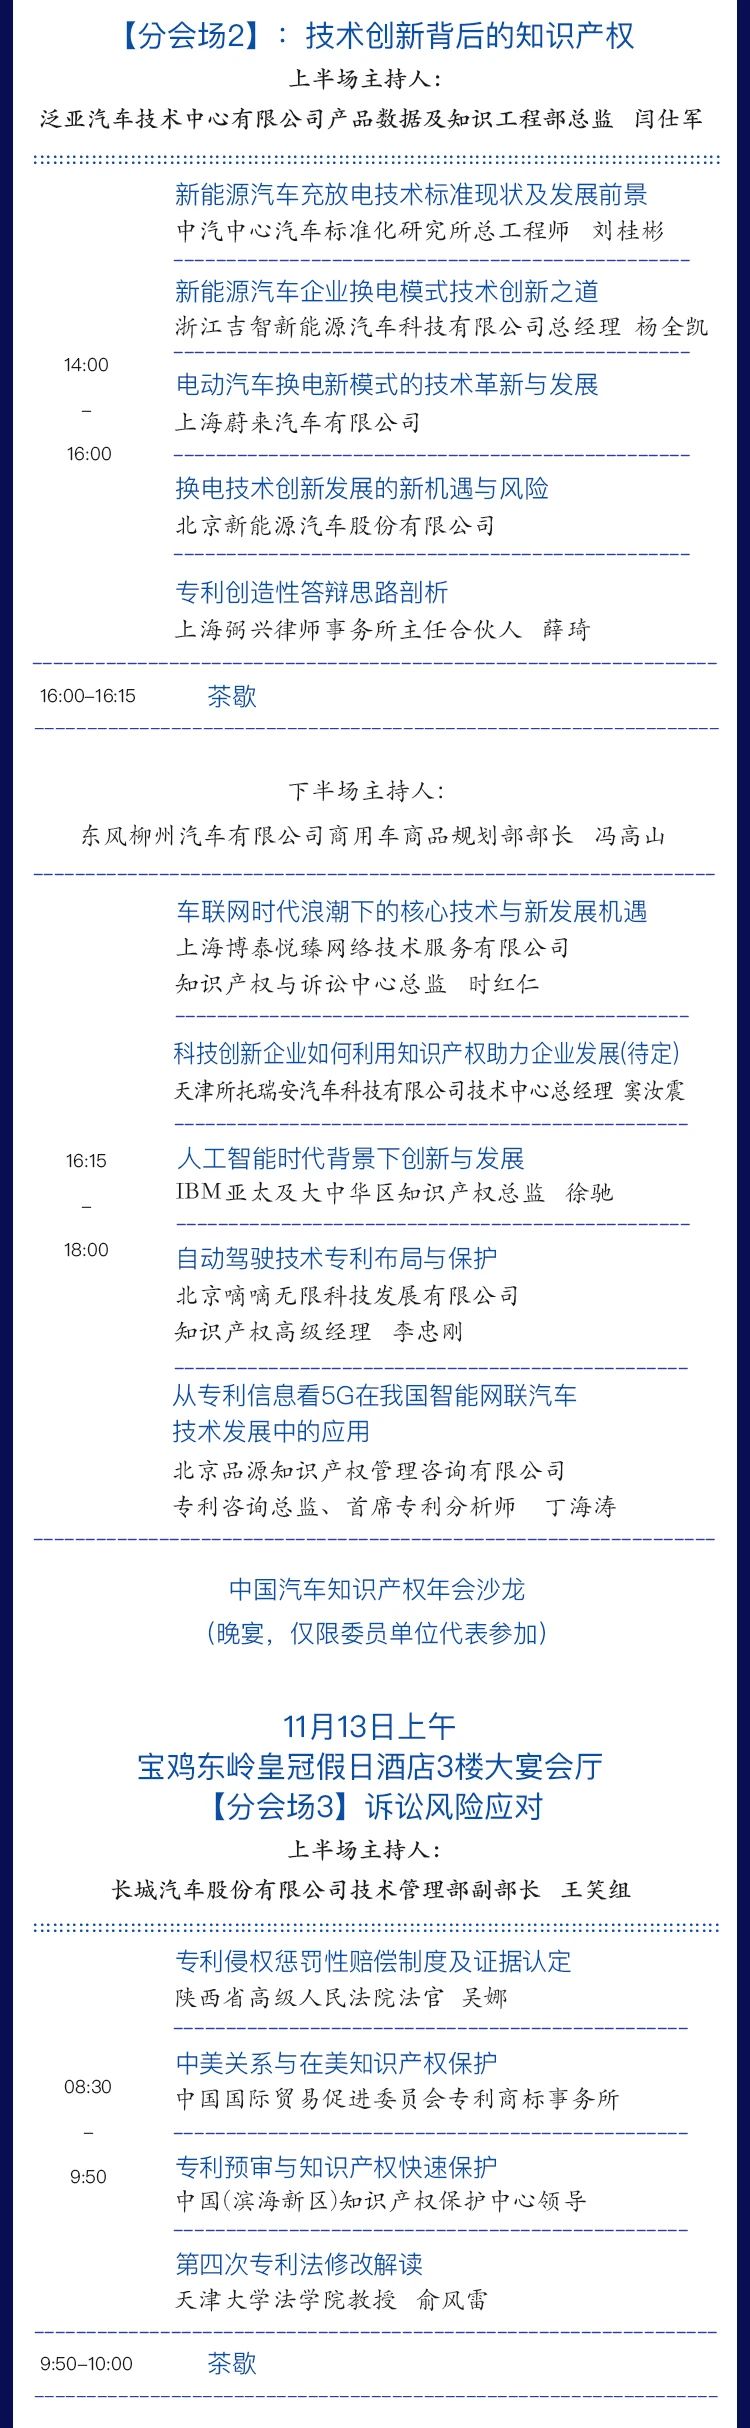 会议通知 | 2020CAIPC中国汽车知识产权年会拟定日程发布